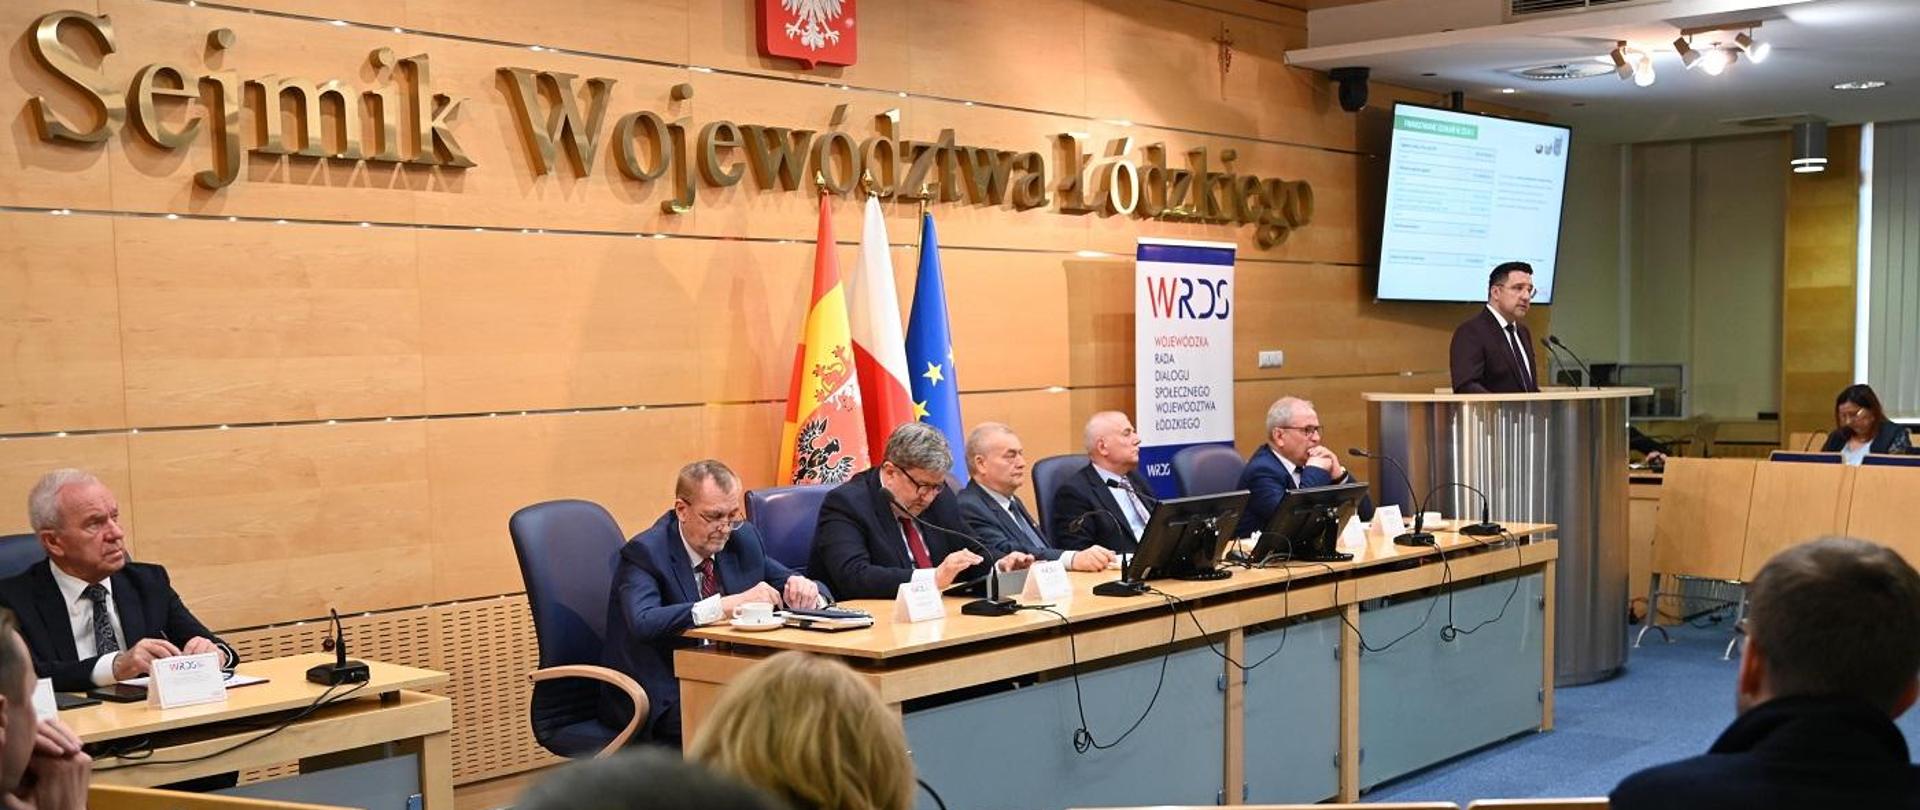 Posiedzenie plenarne Wojewódzkiej Rady Dialogu Społecznego Województwa Łódzkiego